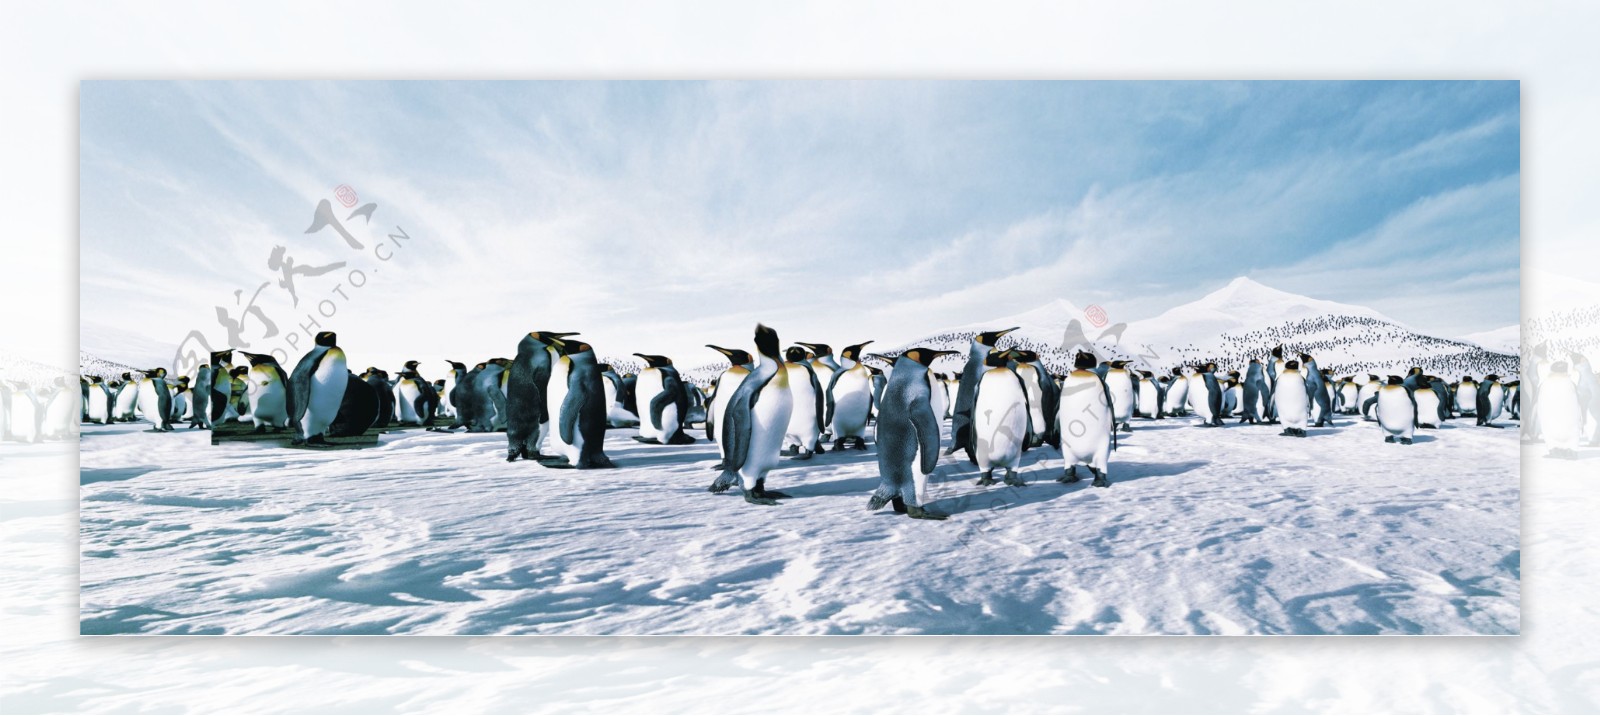 南极雪地上的企鹅图片